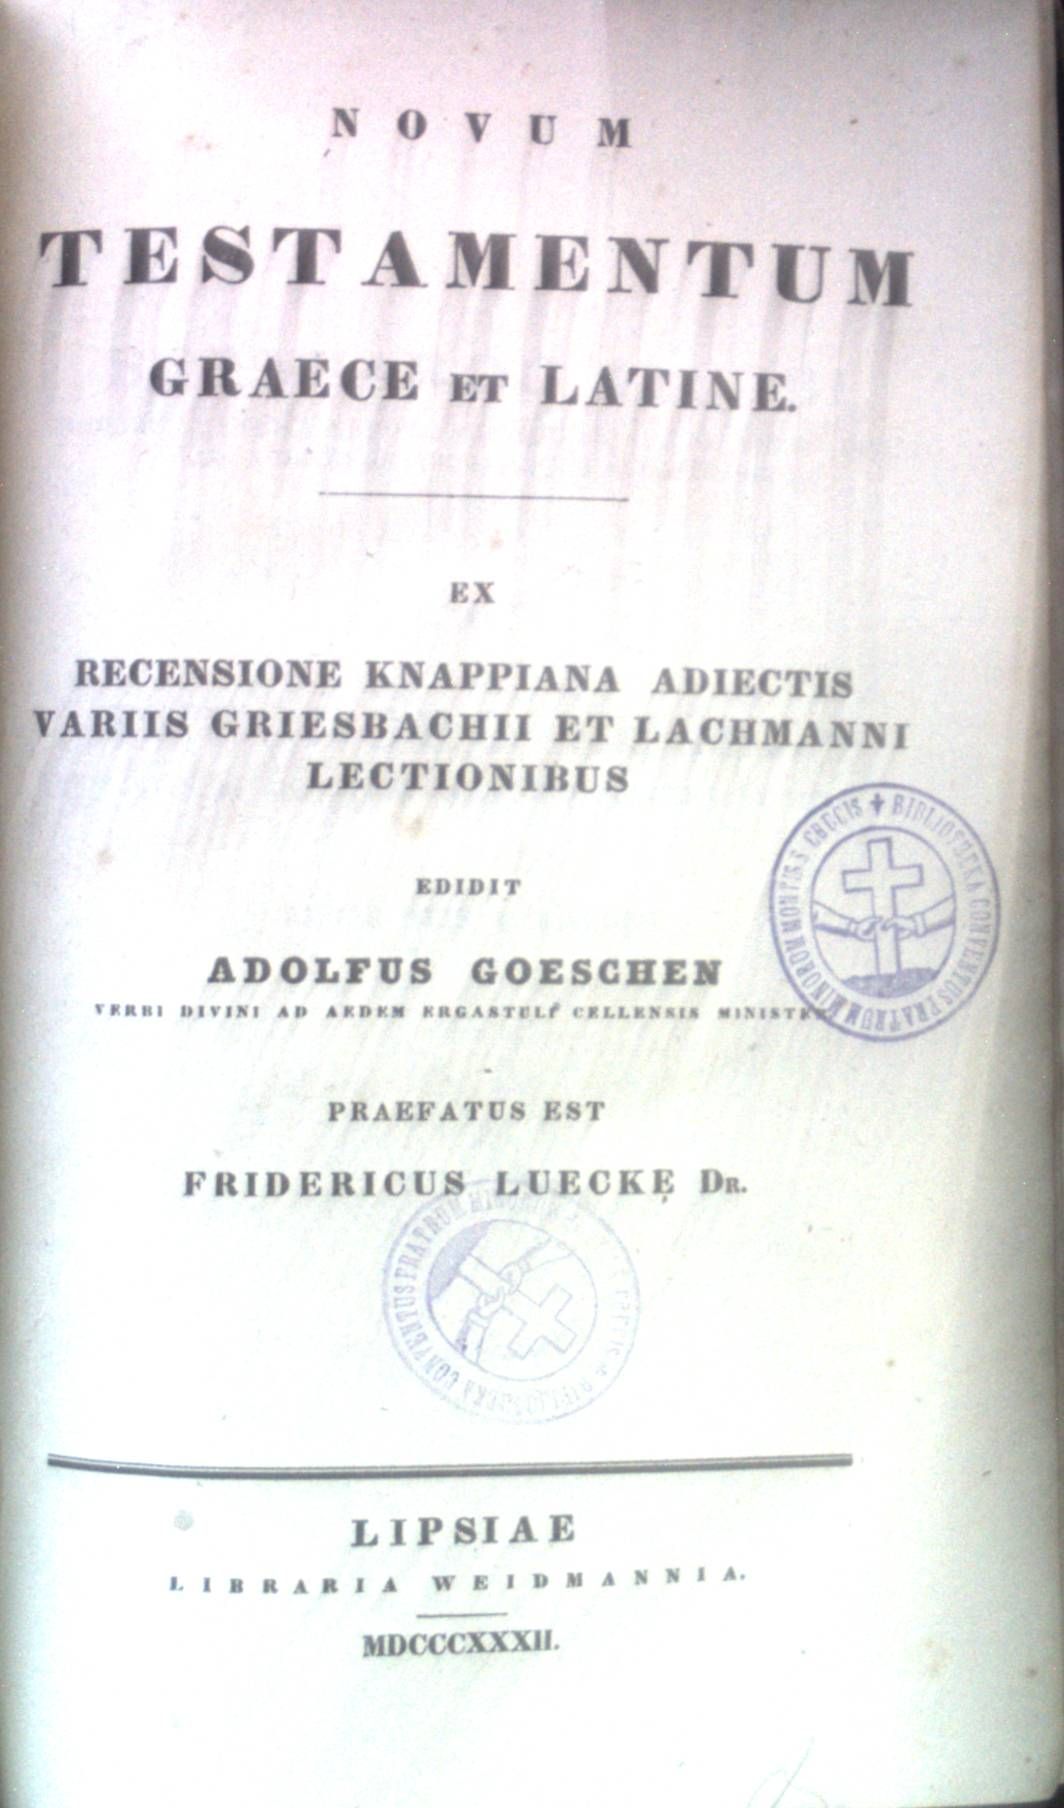 Novum Testamentum Graece et Latine : ex recensione Knappiana adiectis variis Griesbachii et Lachmanni lectionibus / edidit Adolfus Goeschen.